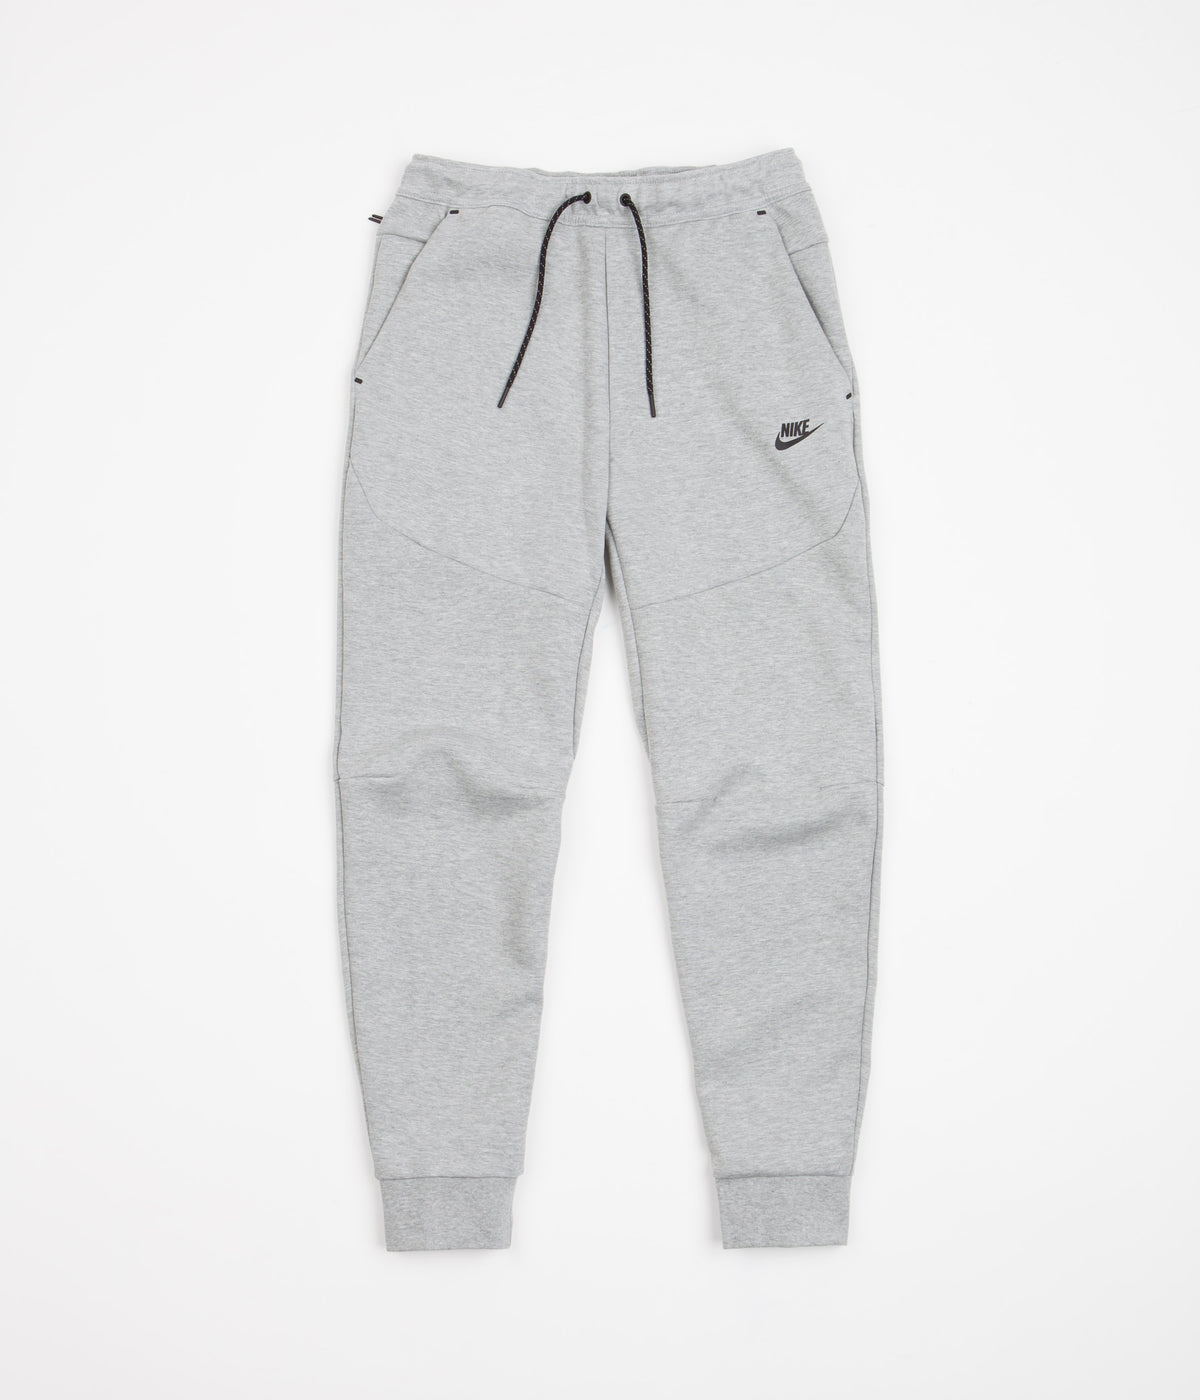 Nike tech fleece sweatpants in gray